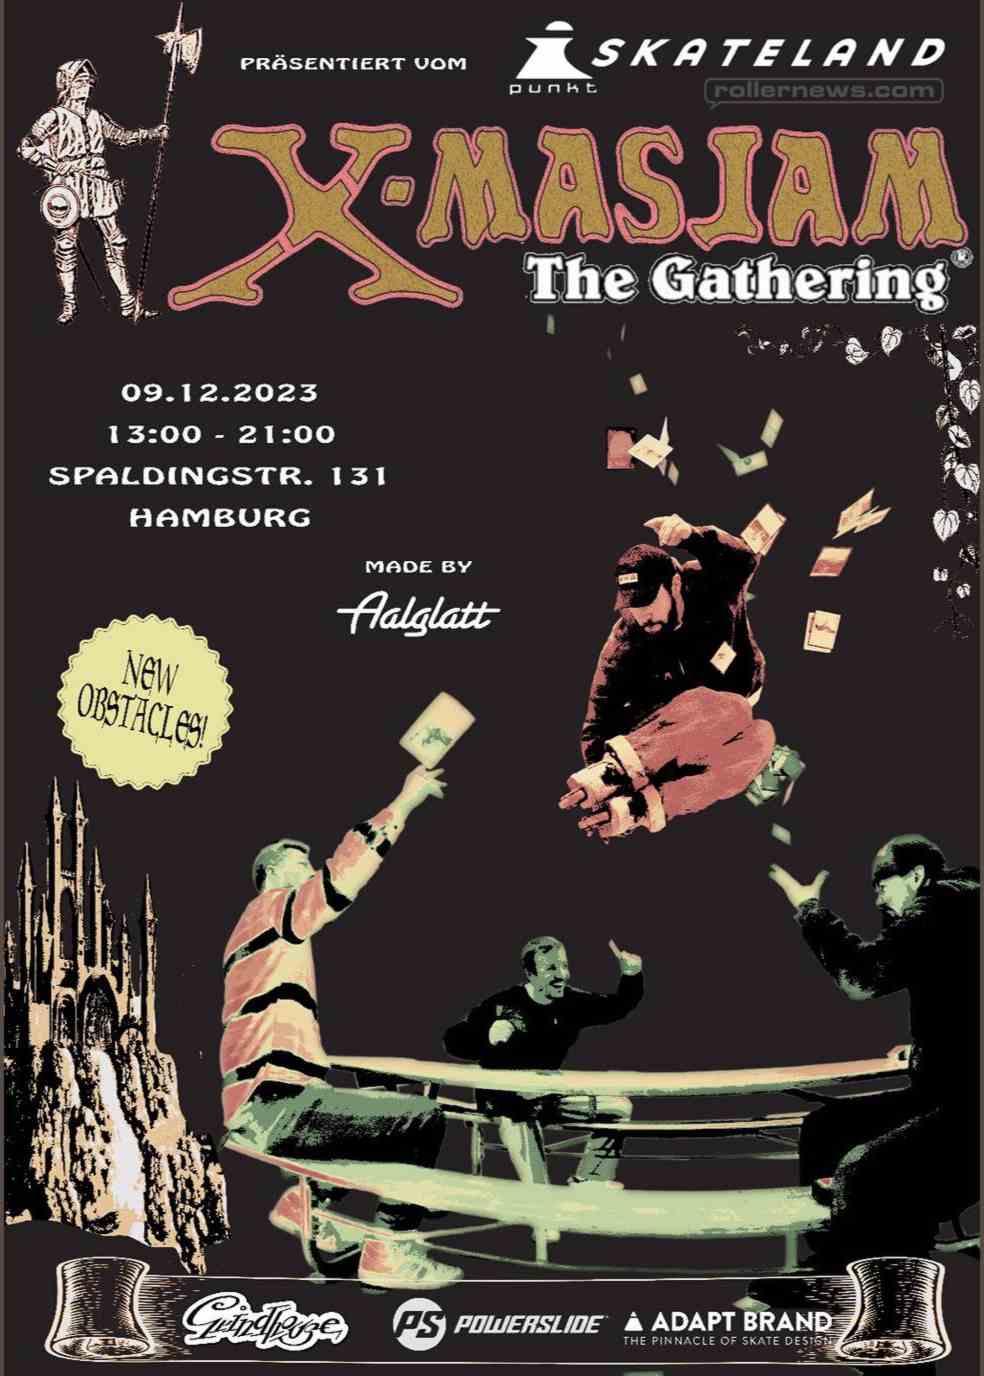 Xmas Jam 2023 - The Gathering (I-Punkt Skateland - Hamburg, Germany) - Flyer